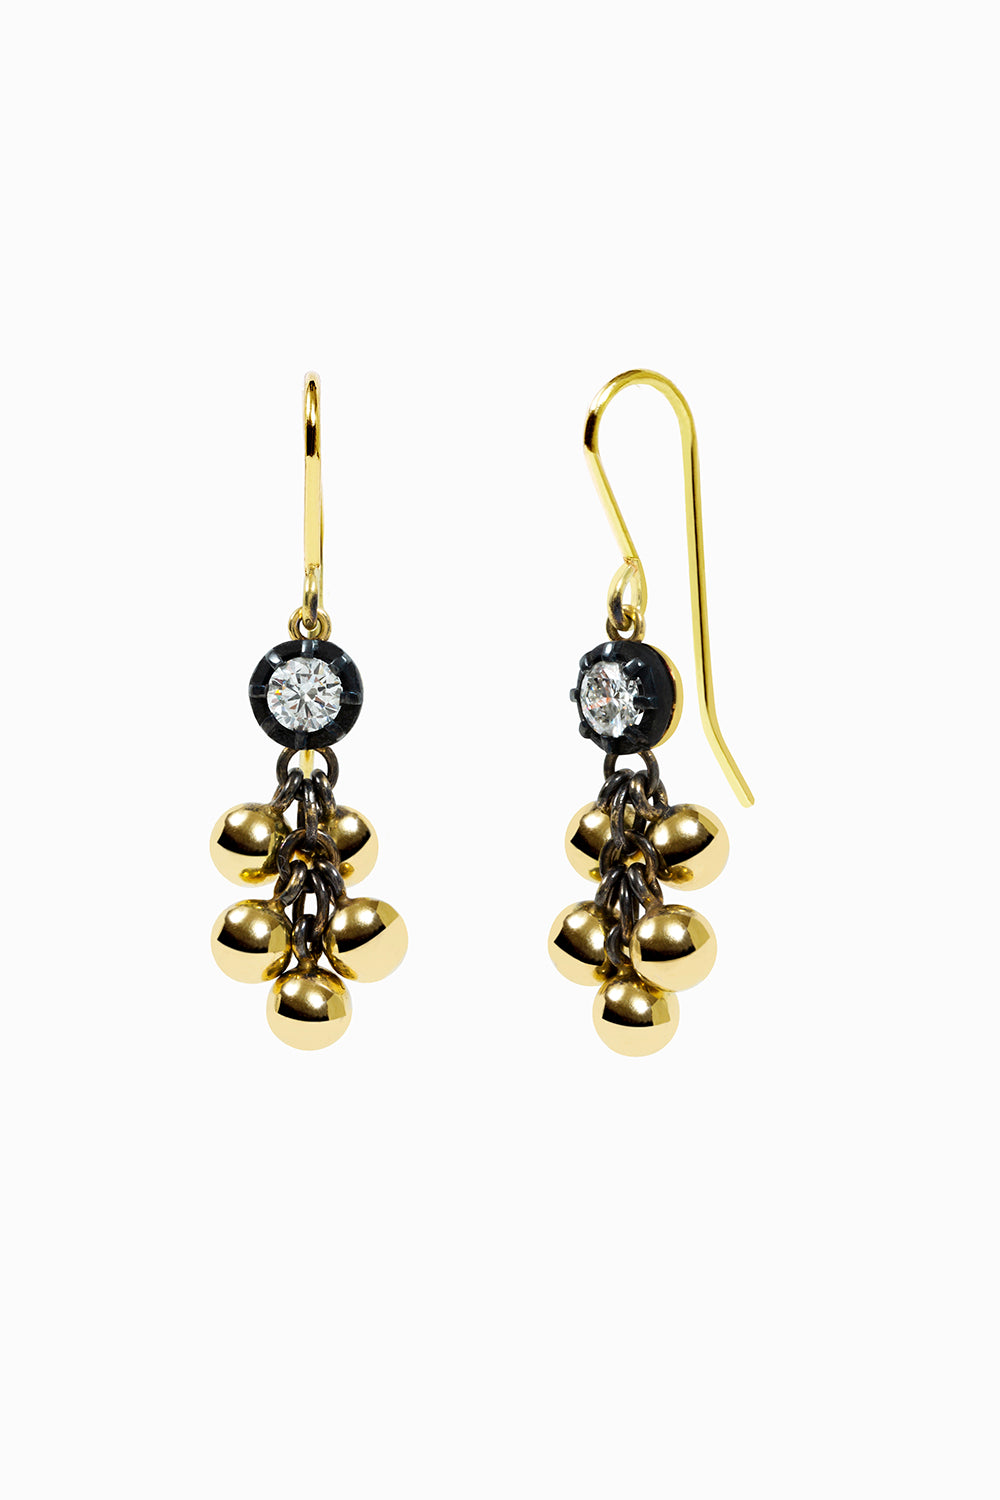 Racimo earrings with diamonds 0.80ct.